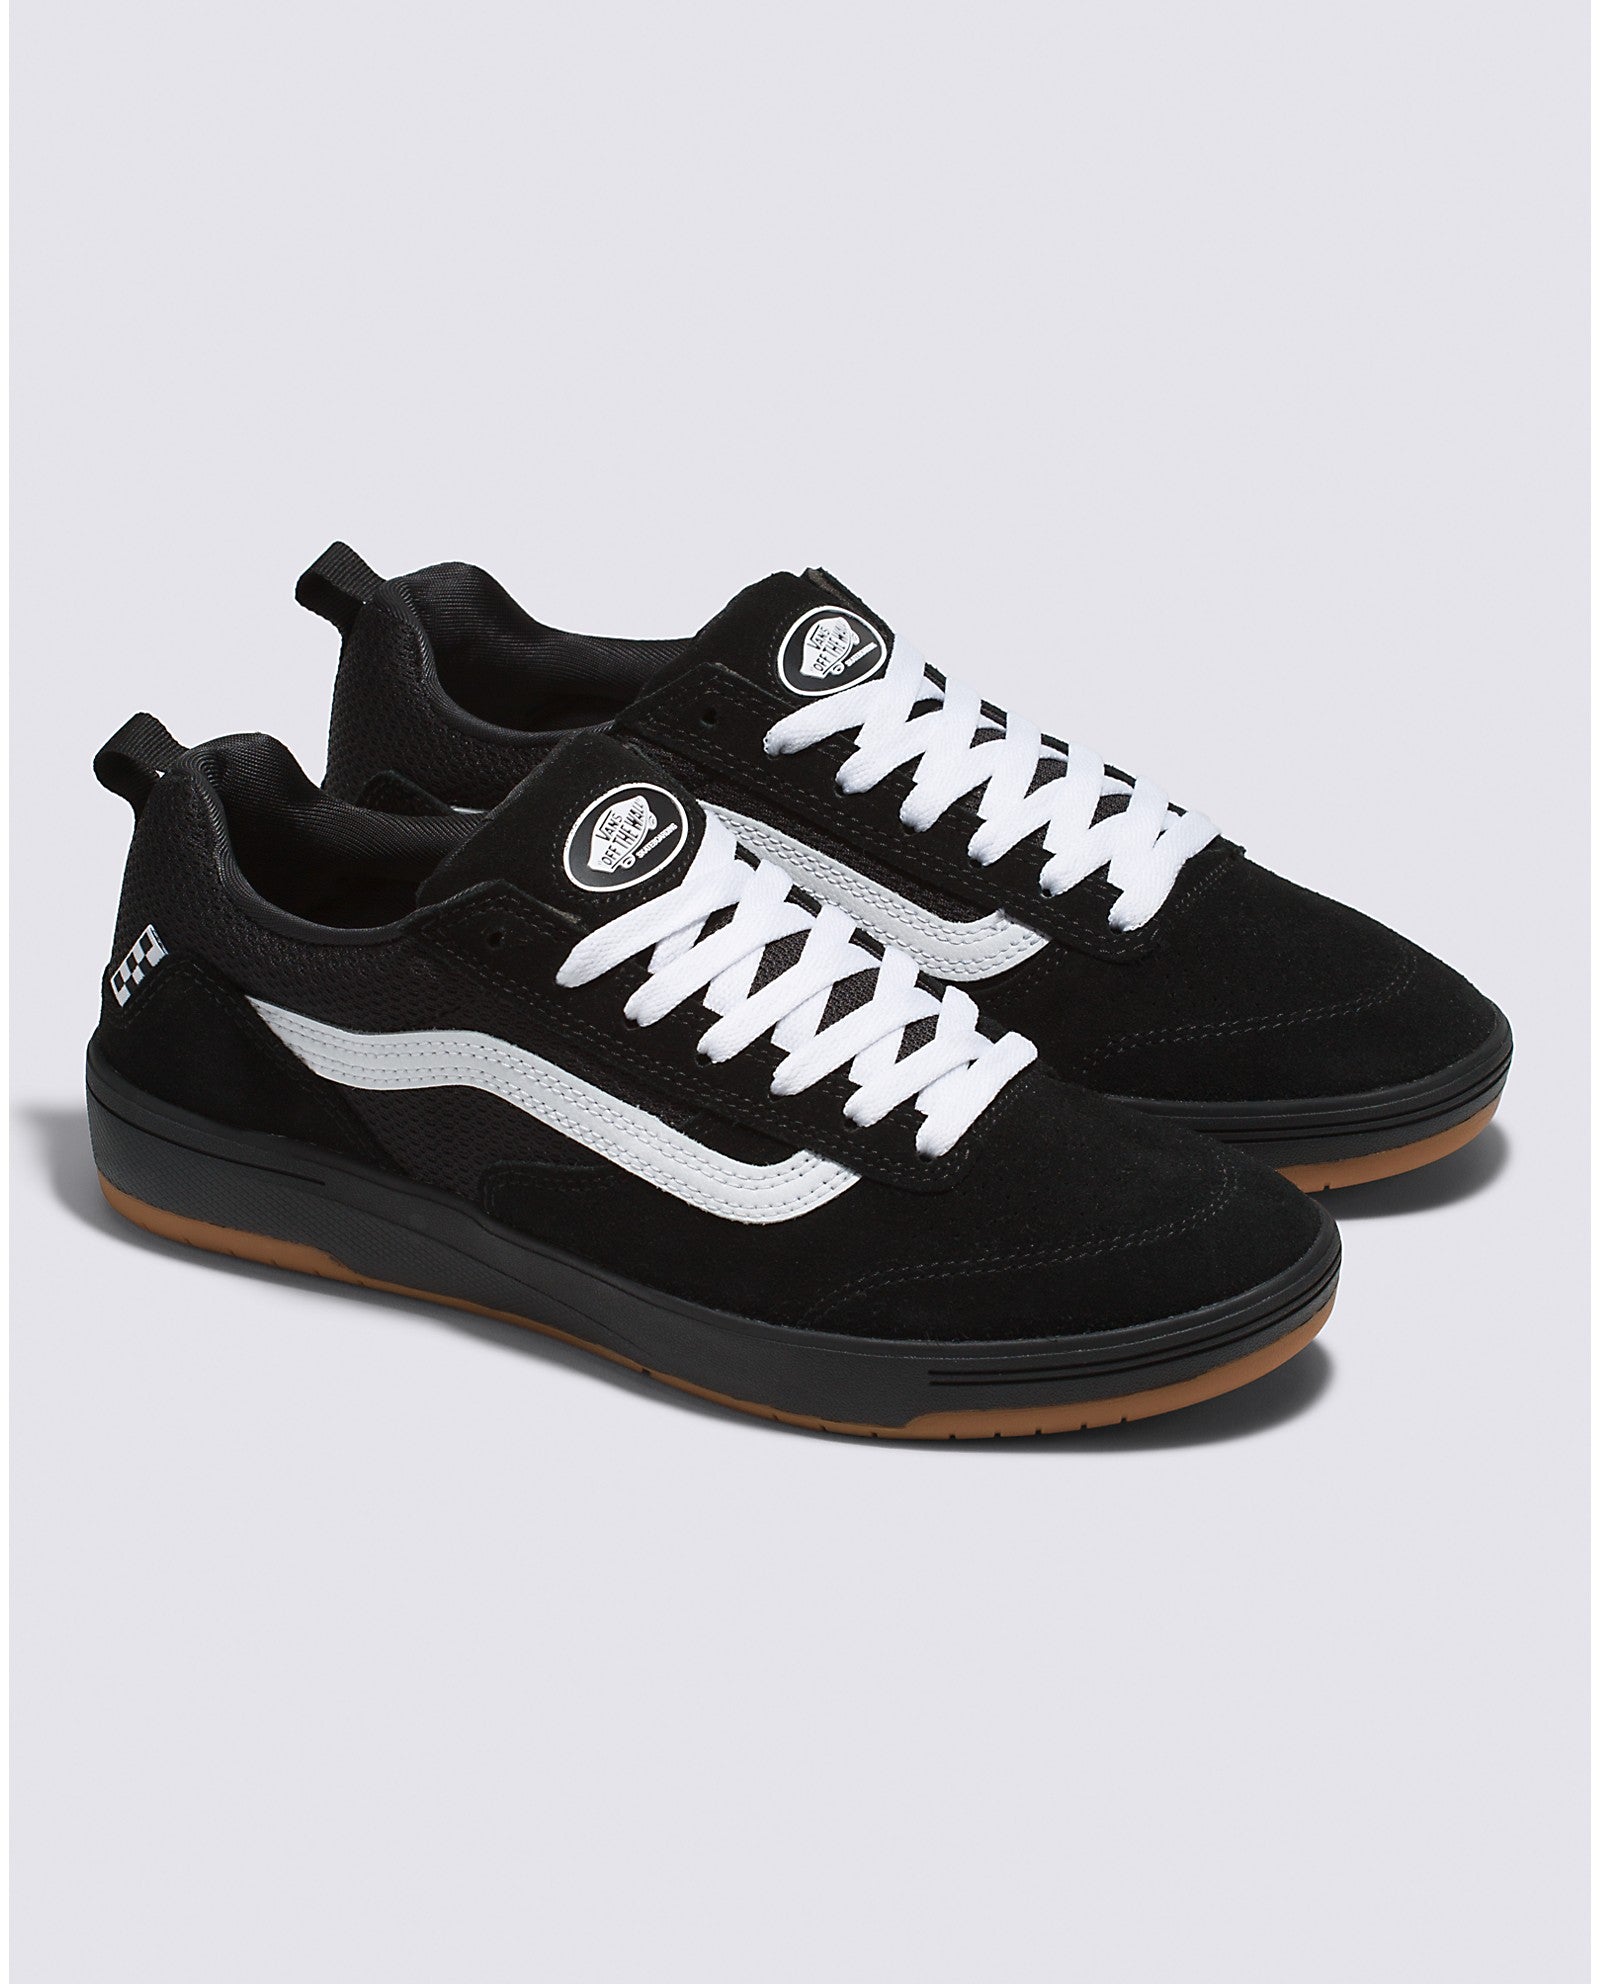 Black/White Zahba Vans Skateboarding Shoe